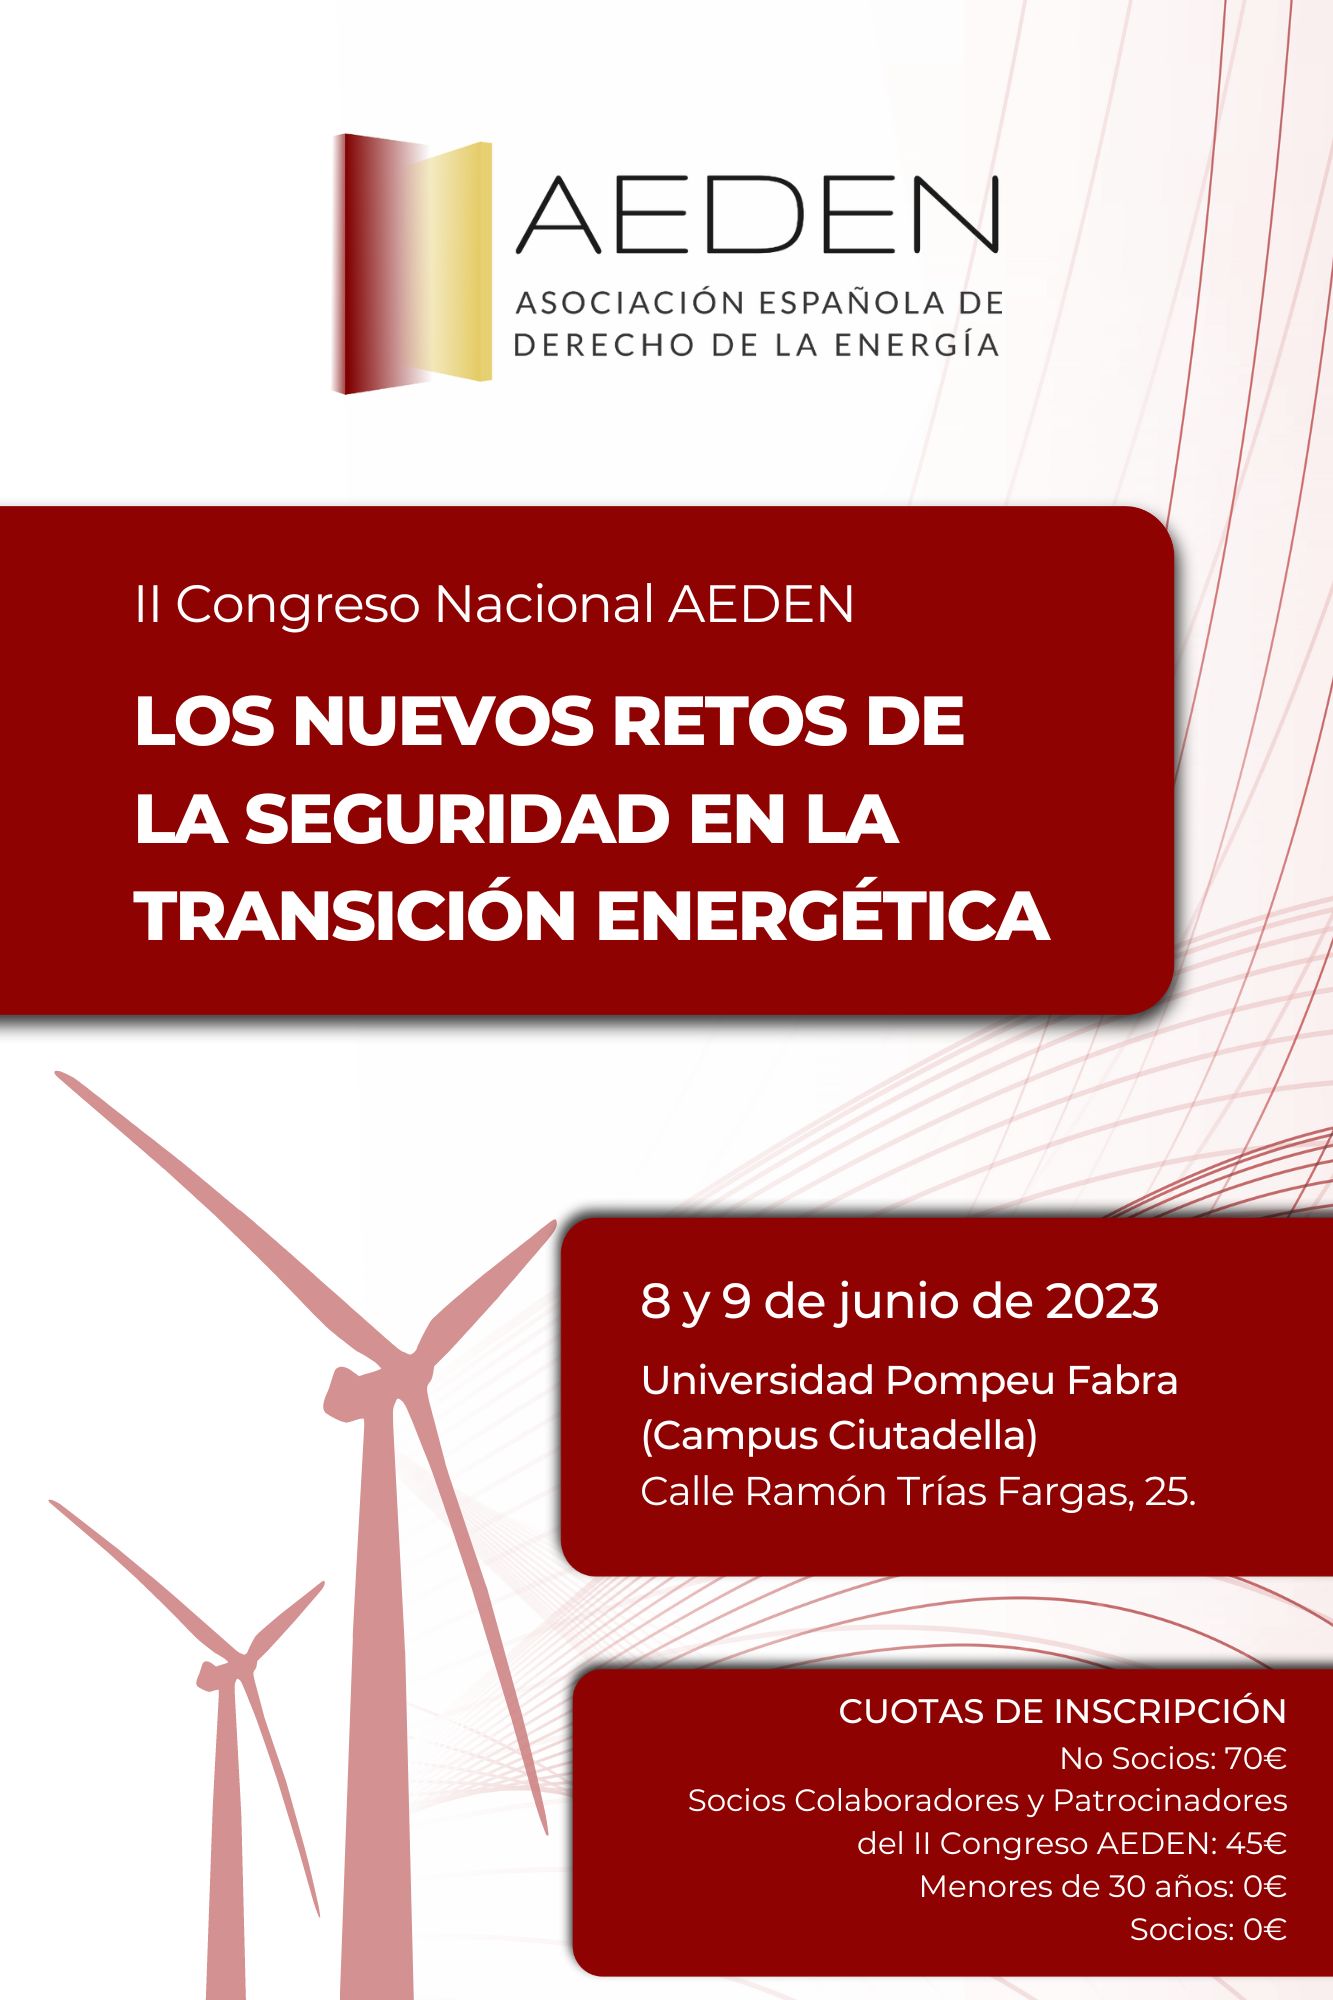 II Congreso AEDEN 2023. LOS NUEVOS RETOS DE LA SEGURIDAD EN LA TRANSICIÓN ENERGÉTICA